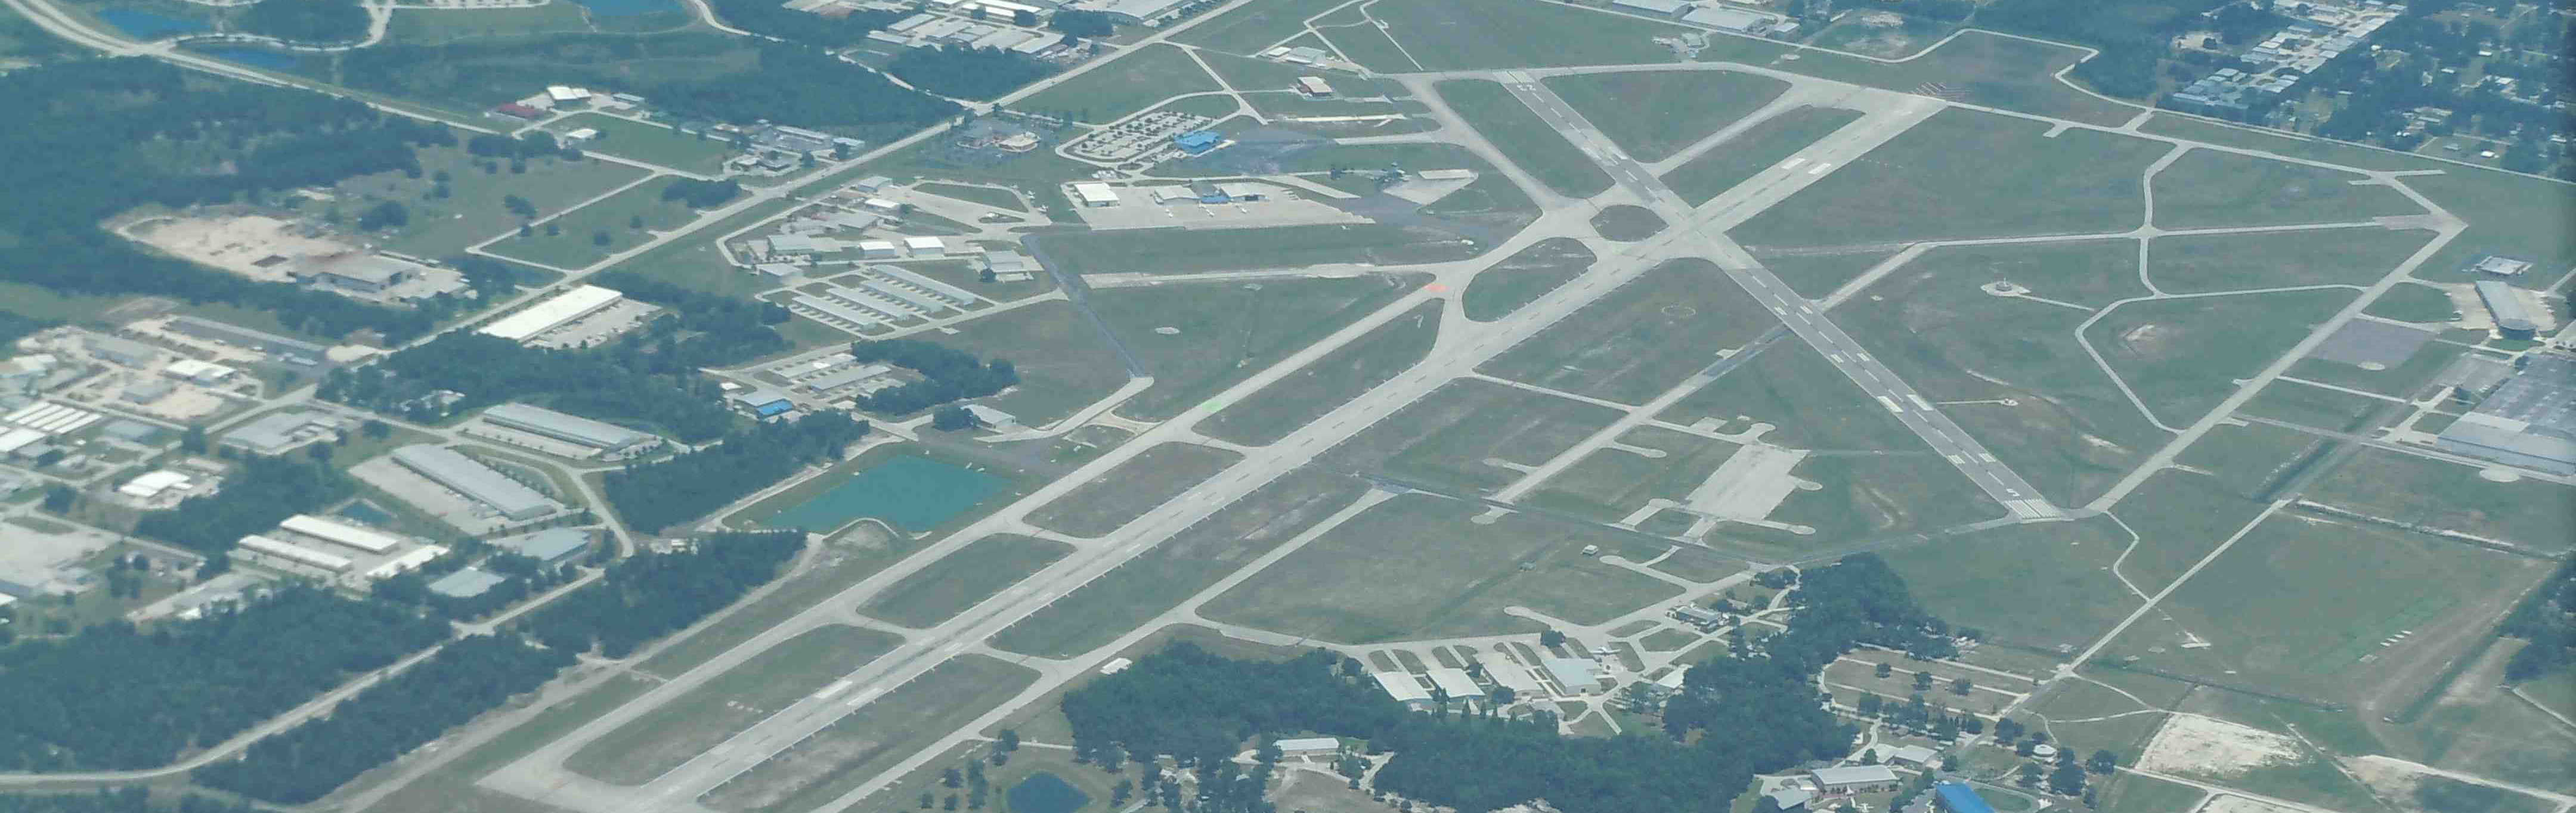 訓練空港近くの管制空港の写真です。